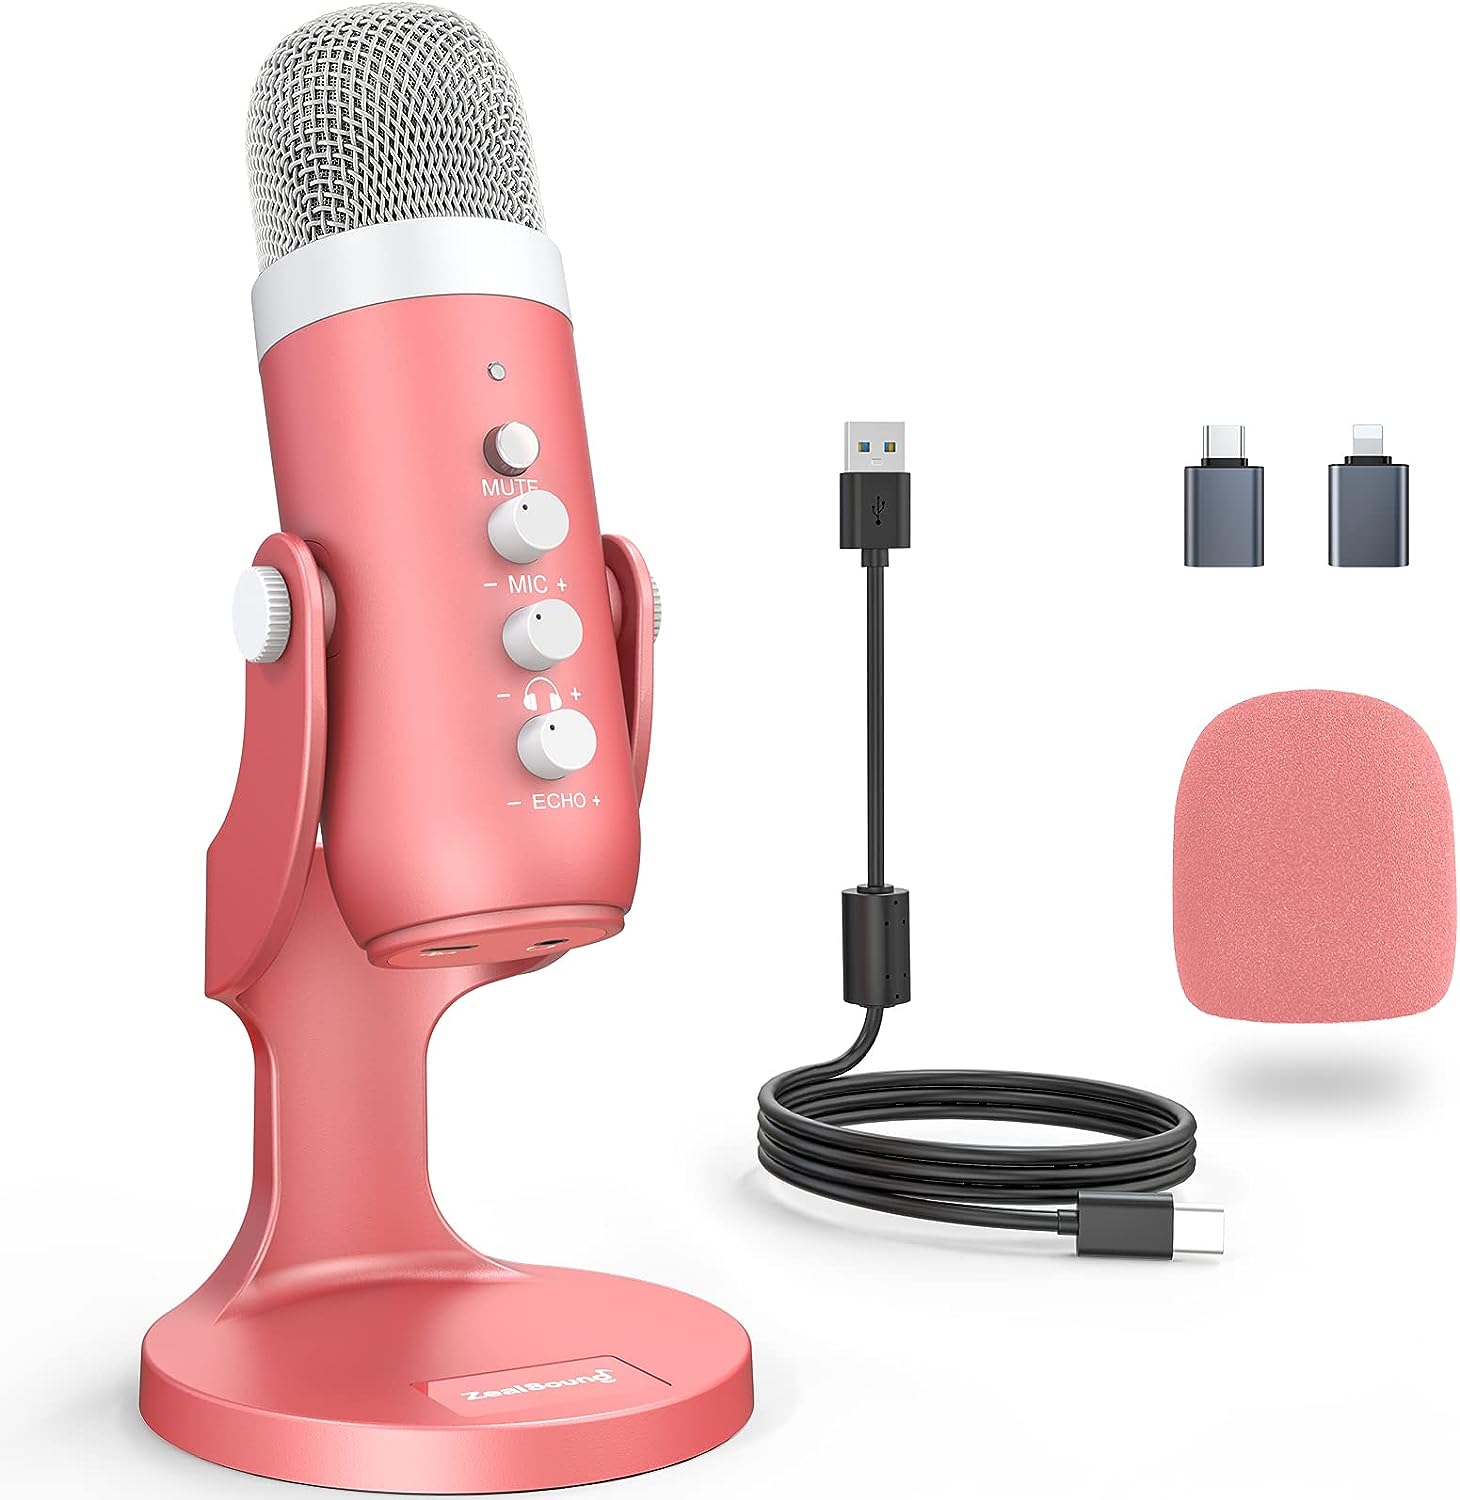 Micrófono USB para PC PC PS4 condensador cardioide ASMR micrófono metal  podcast micrófono para streaming estudio grabación de vídeo